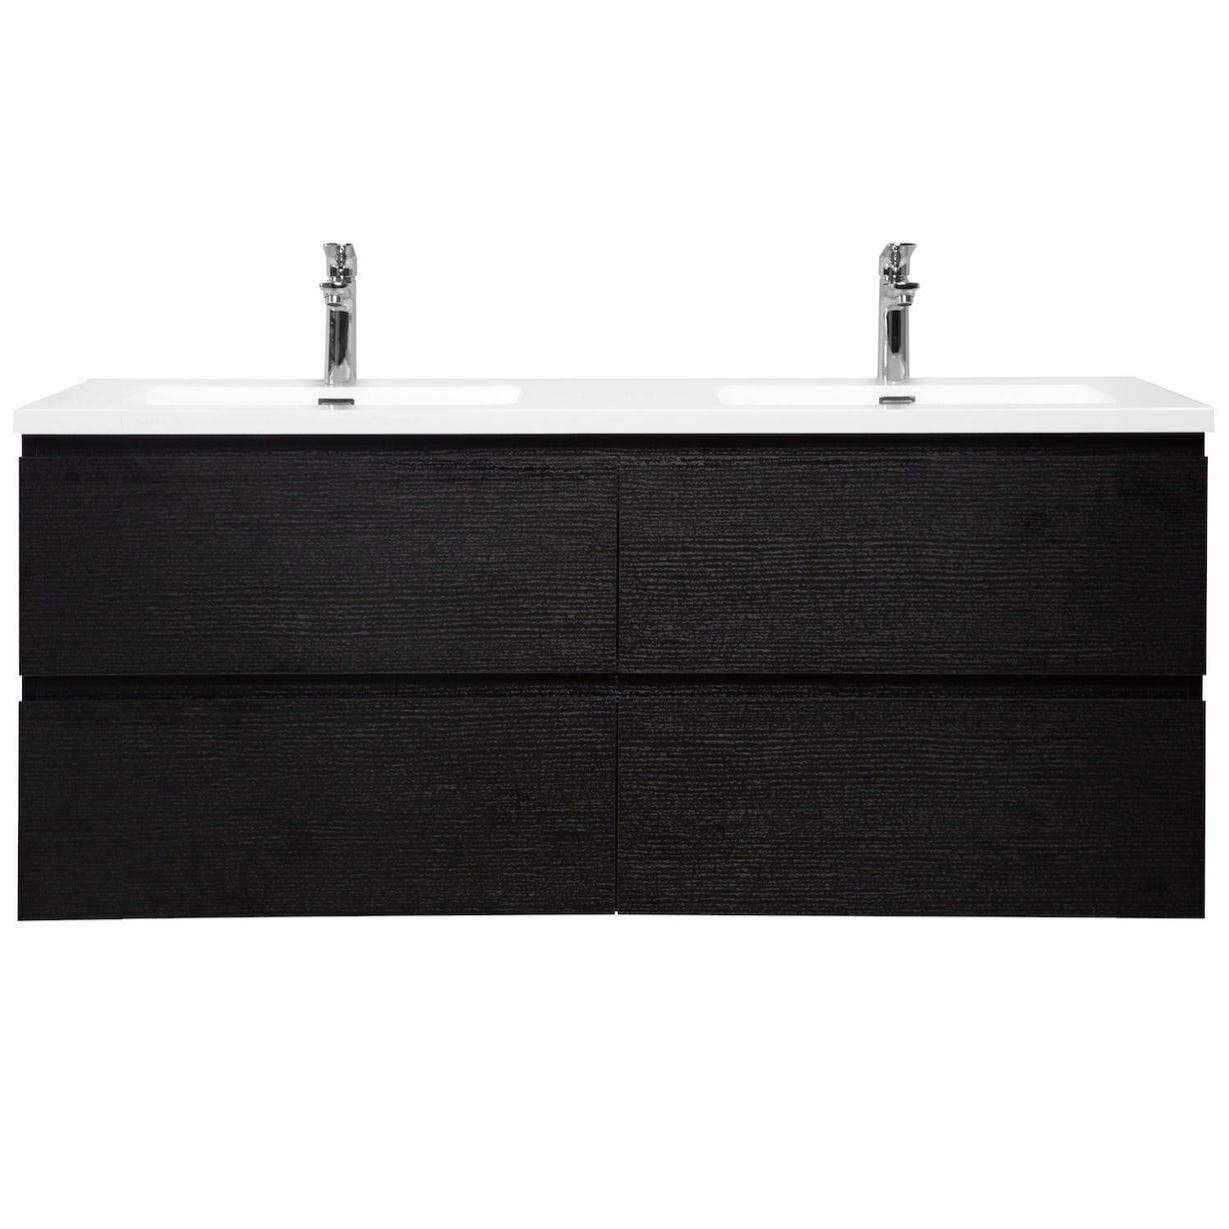 Meuble de salle de bain Angela 140 cm lavabo noir bois – Armoire de rangement Meuble lavabo 3